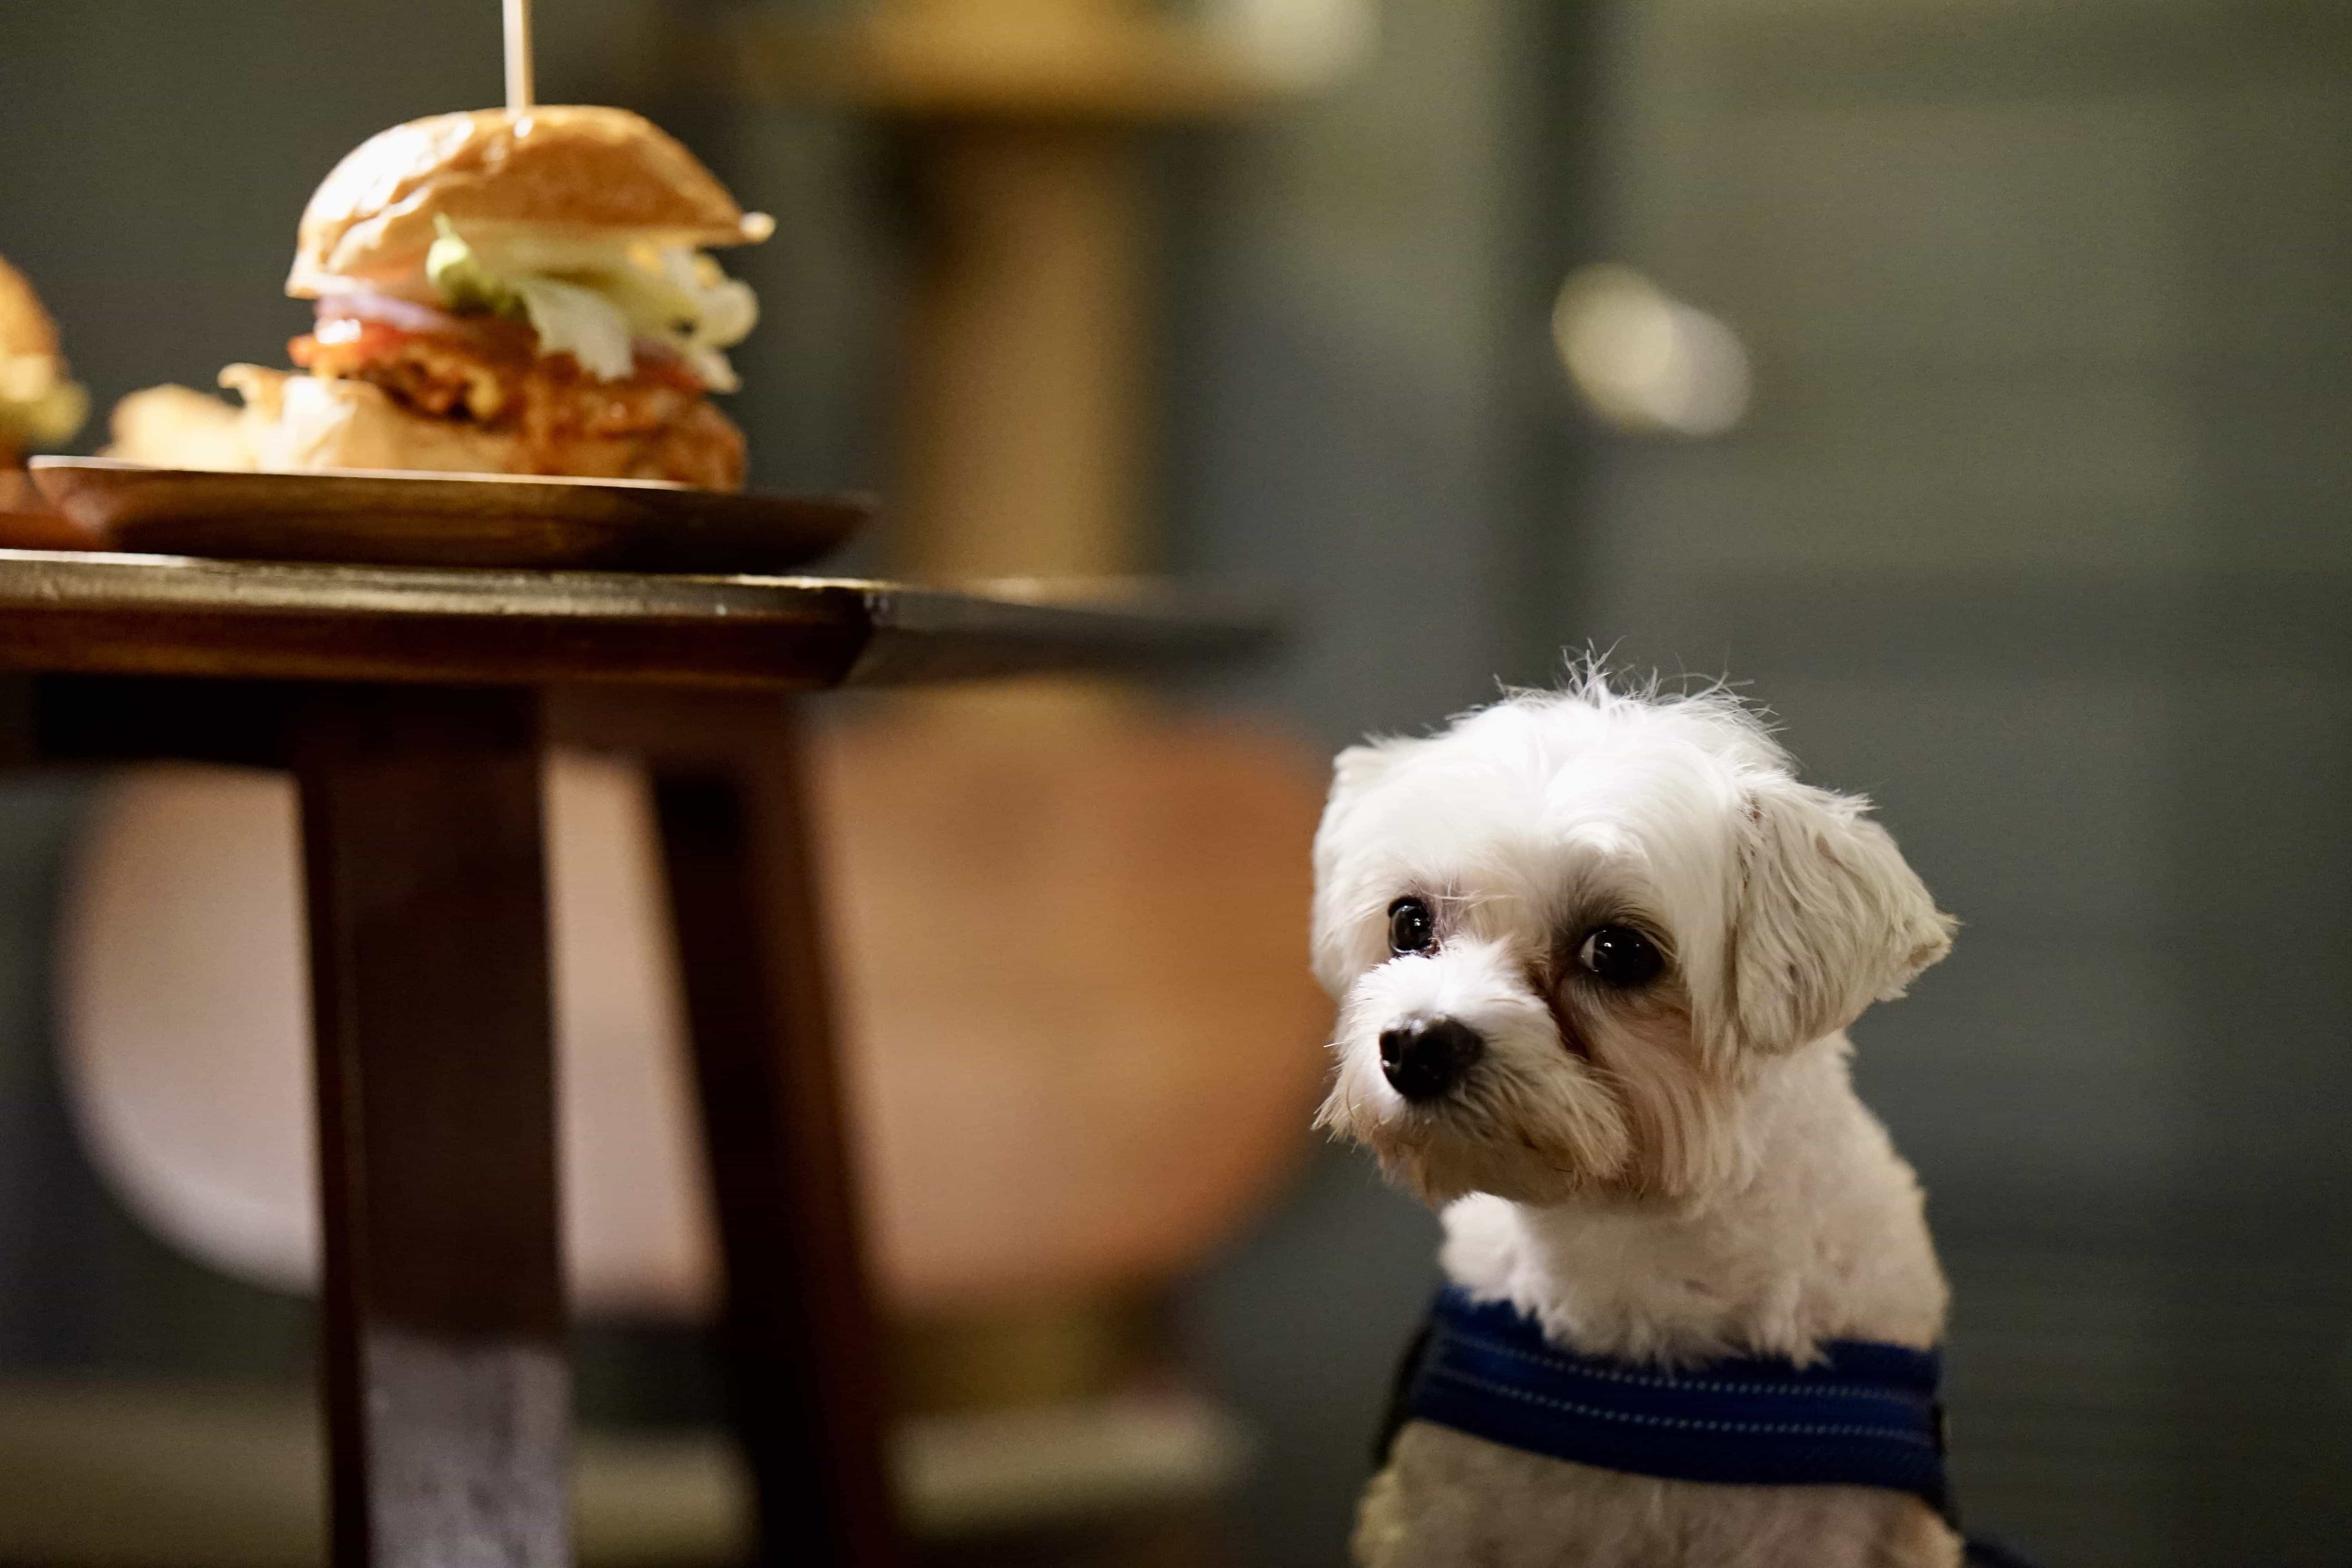 TAKE OUT Burger 是很棒的寵物友善餐廳，但是沒有狗狗吃的食物，偷筆只能哀怨的看著漢堡。